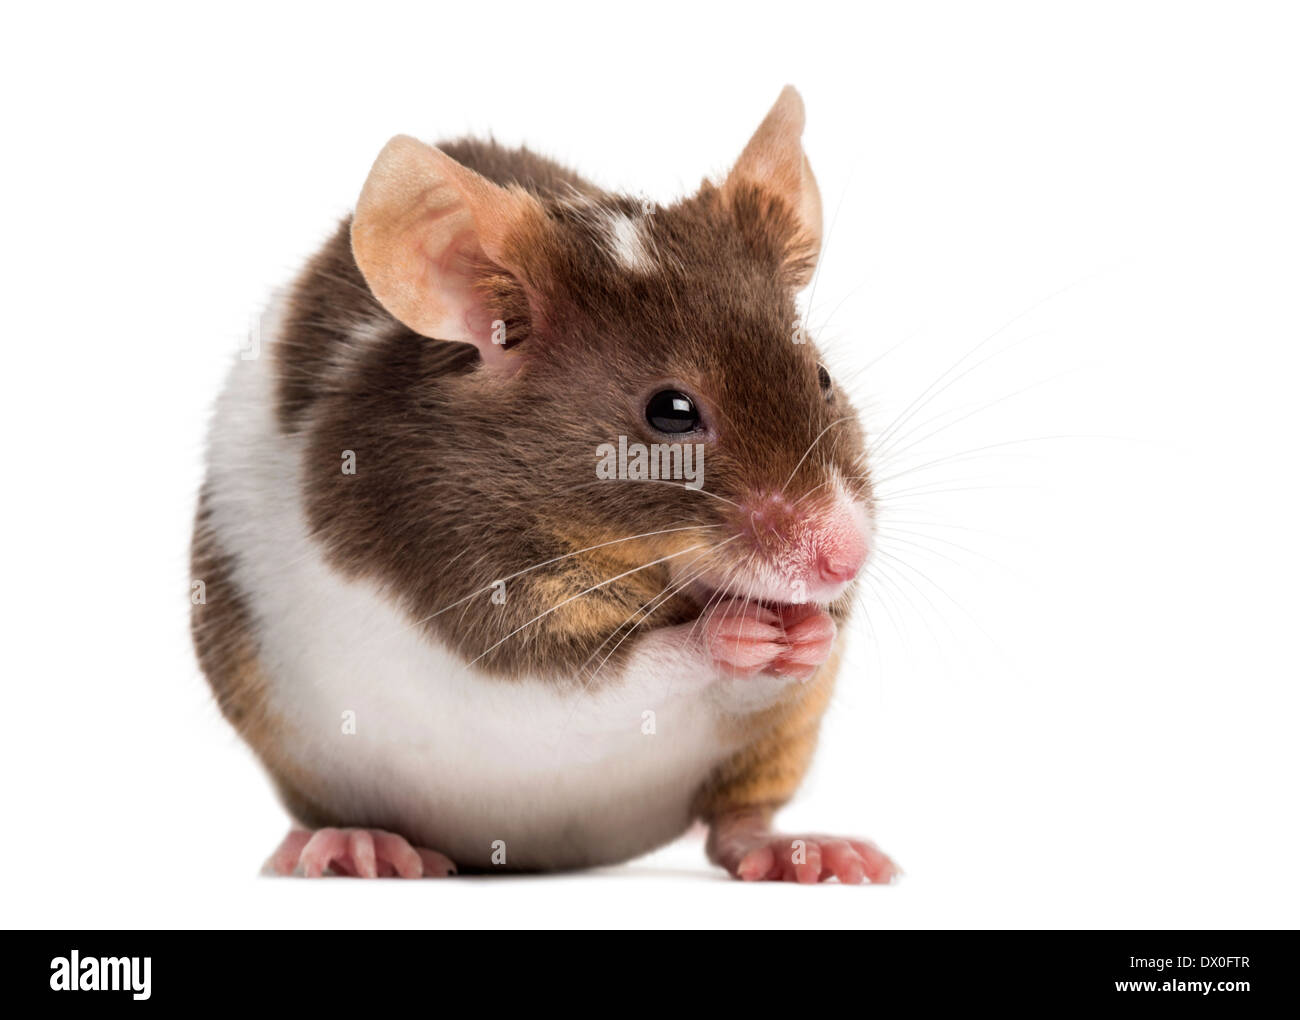 Casa común el ratón, Mus musculus, delante de un fondo blanco Foto de stock